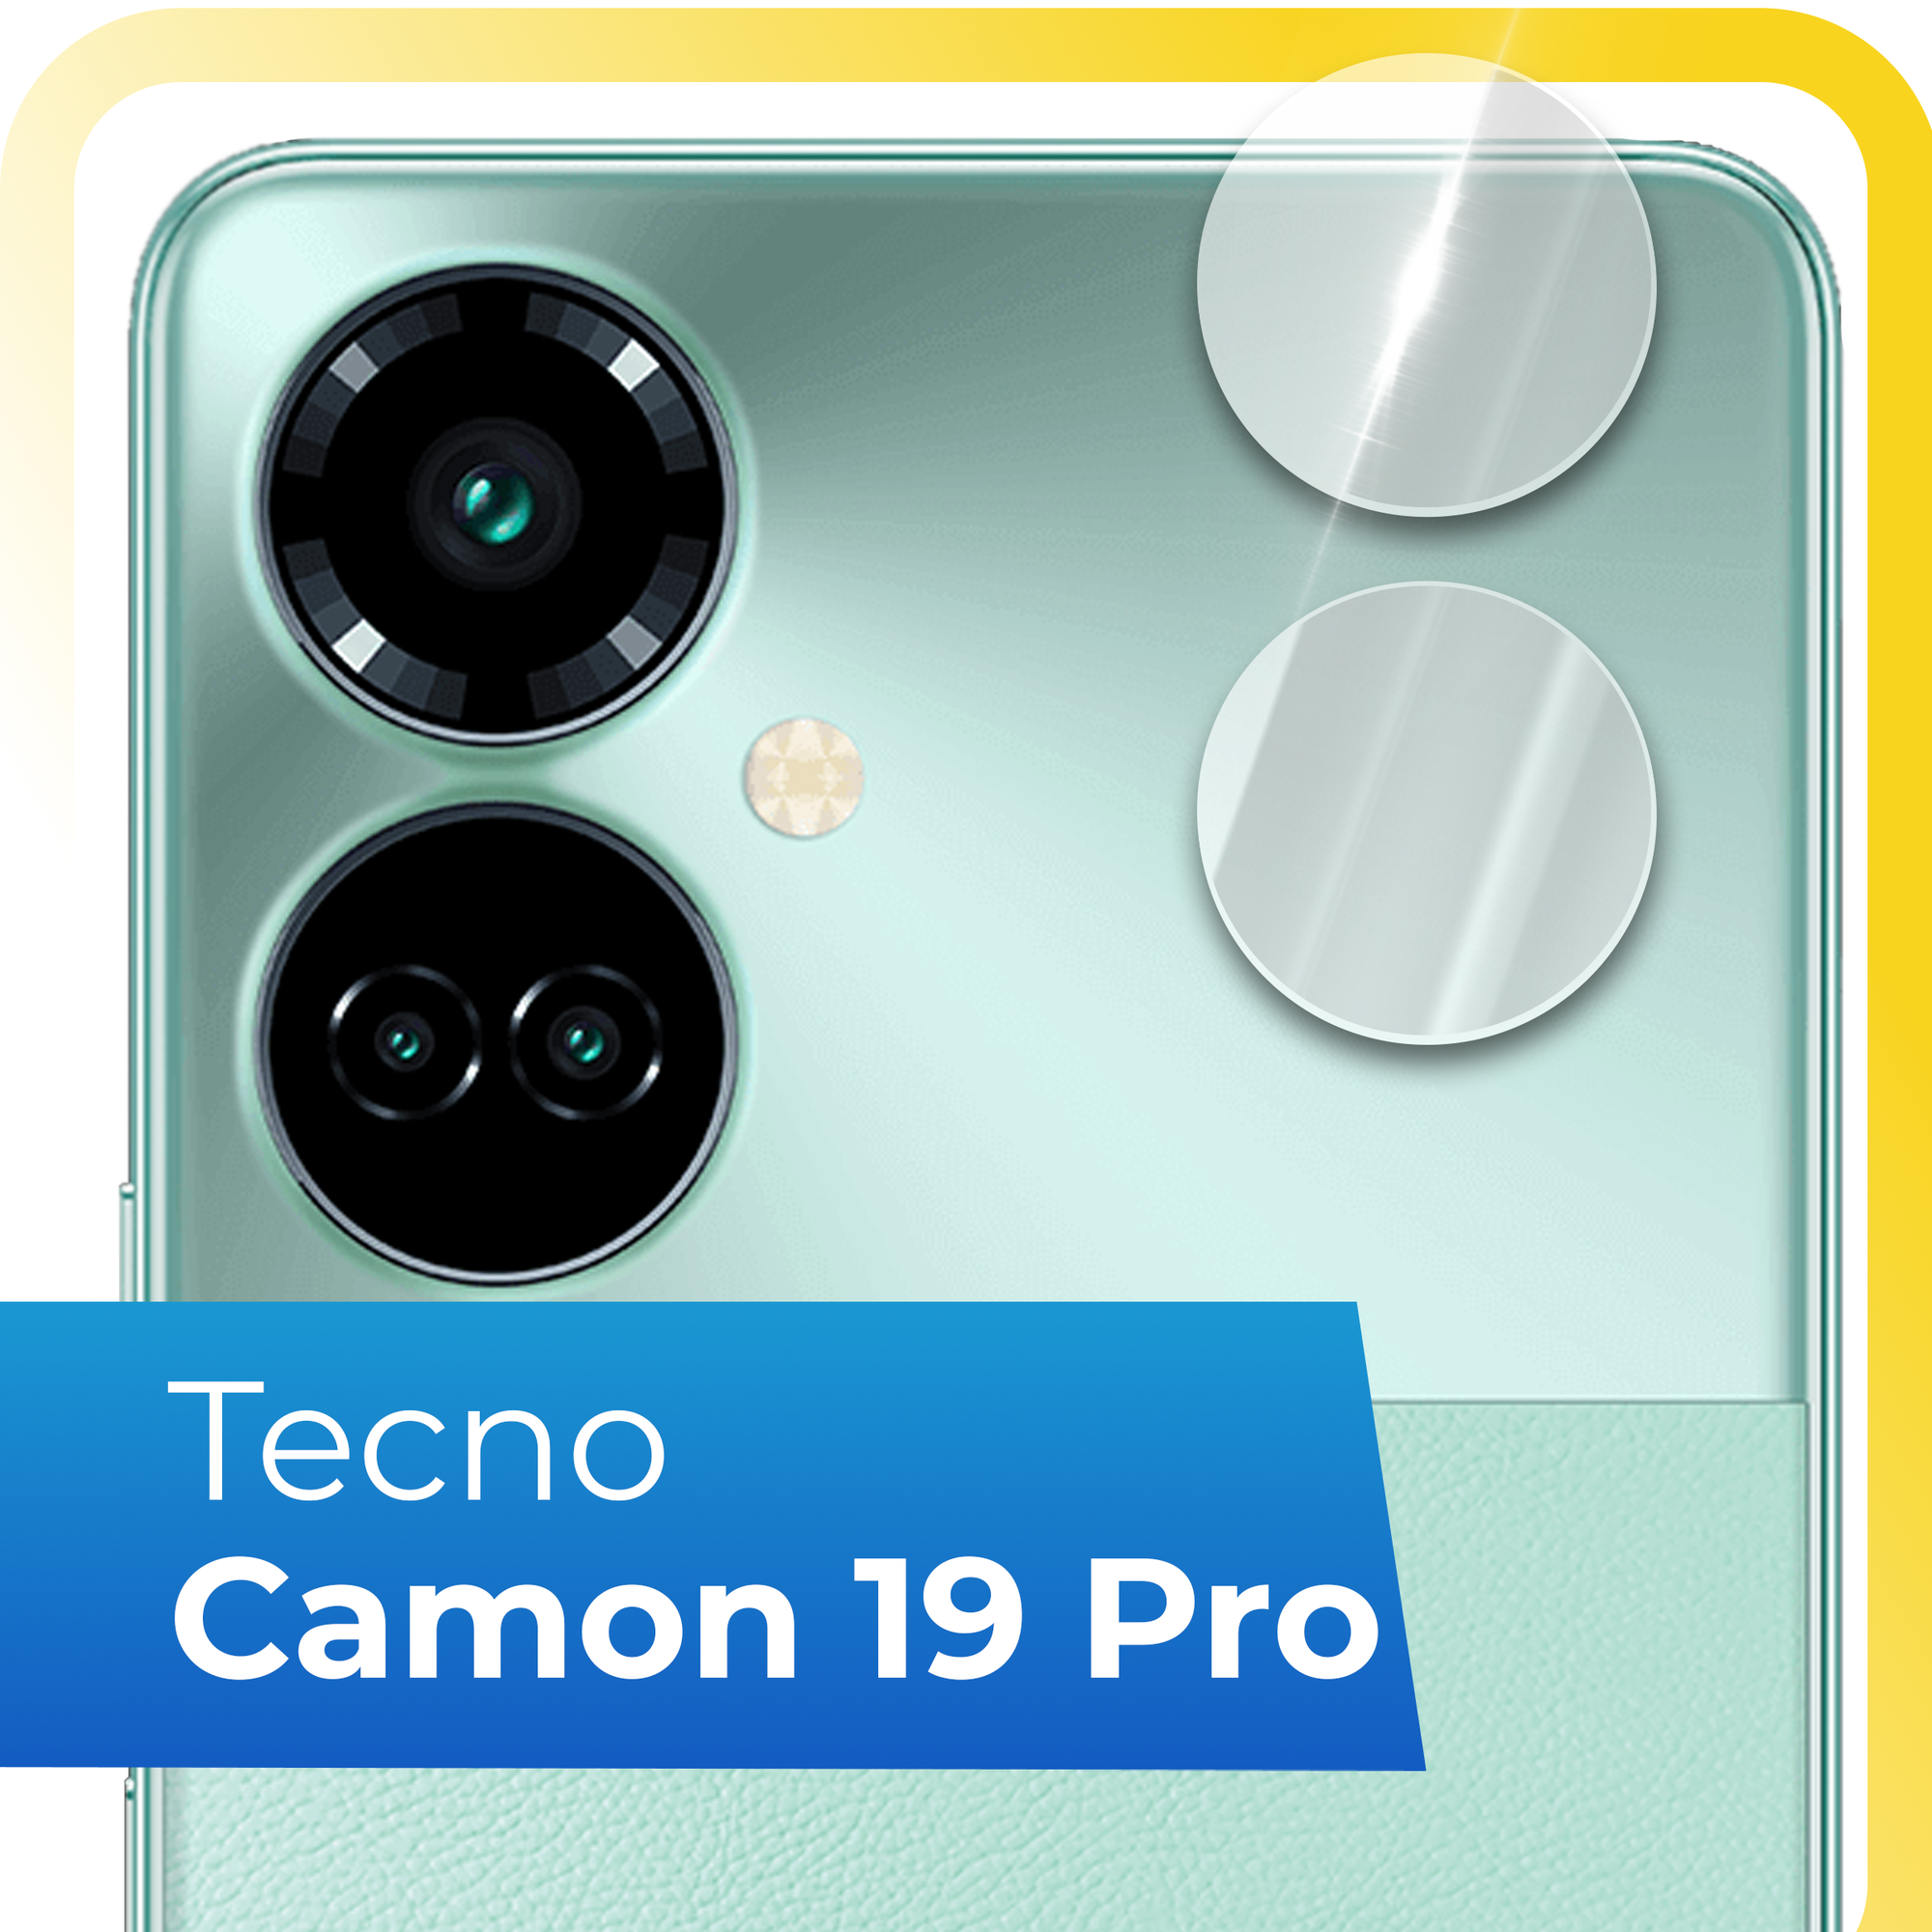 Защитное стекло на камеру телефона Tecno Camon 19 Pro / Противоударное стекло для задней камеры смартфона Техно Камон 19 Про / Прозрачное